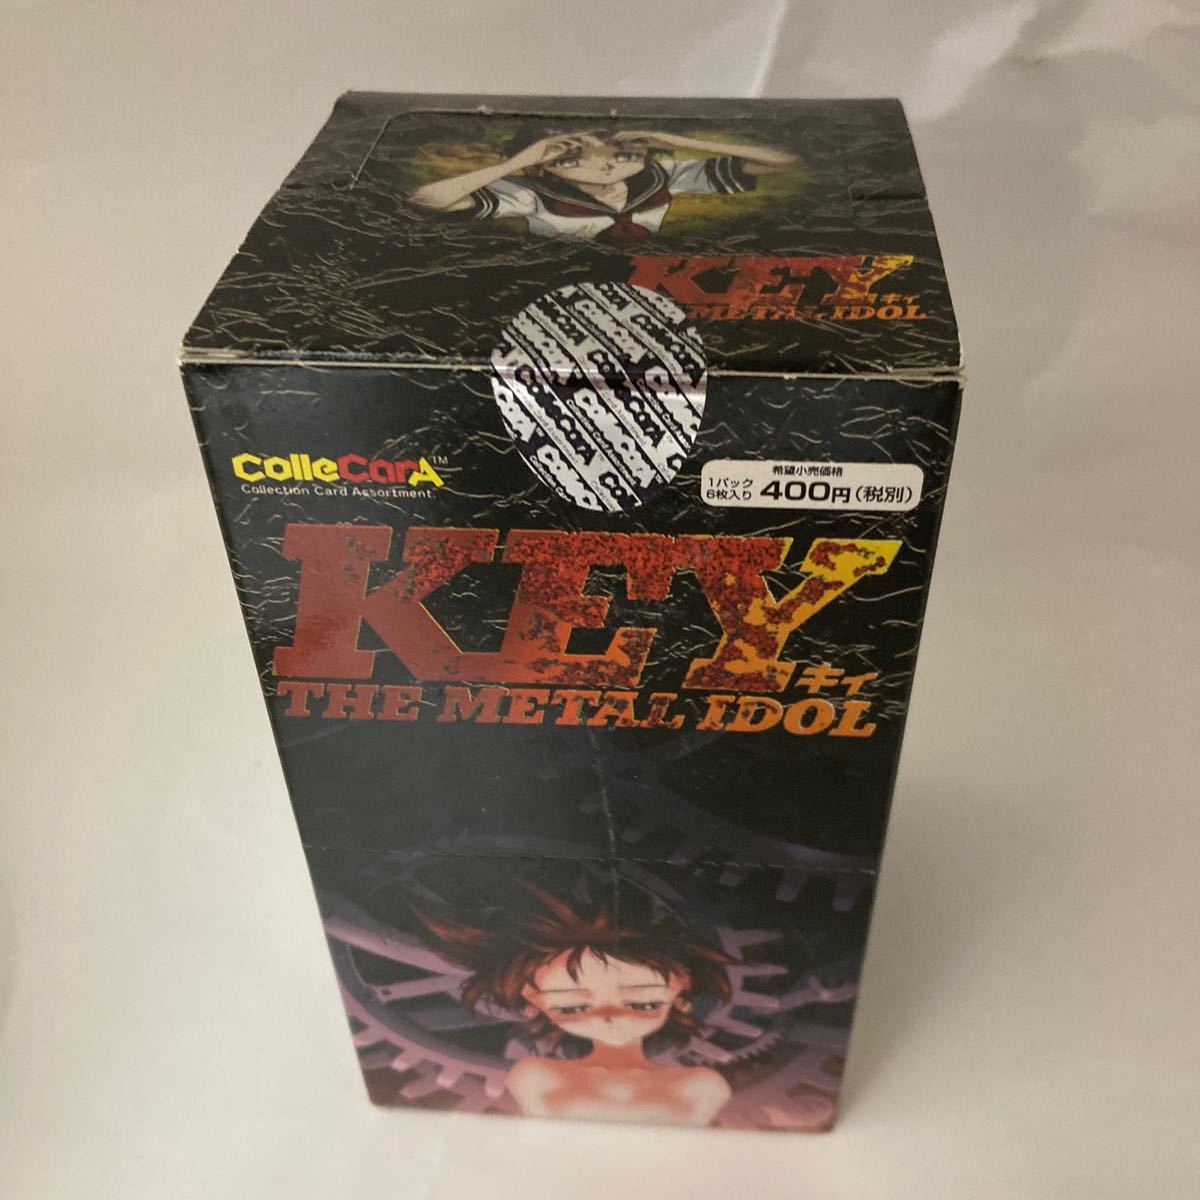  наличие 1 нераспечатанный Key The Metal Idol Trading Cards 15 Pack Box ColleCarA